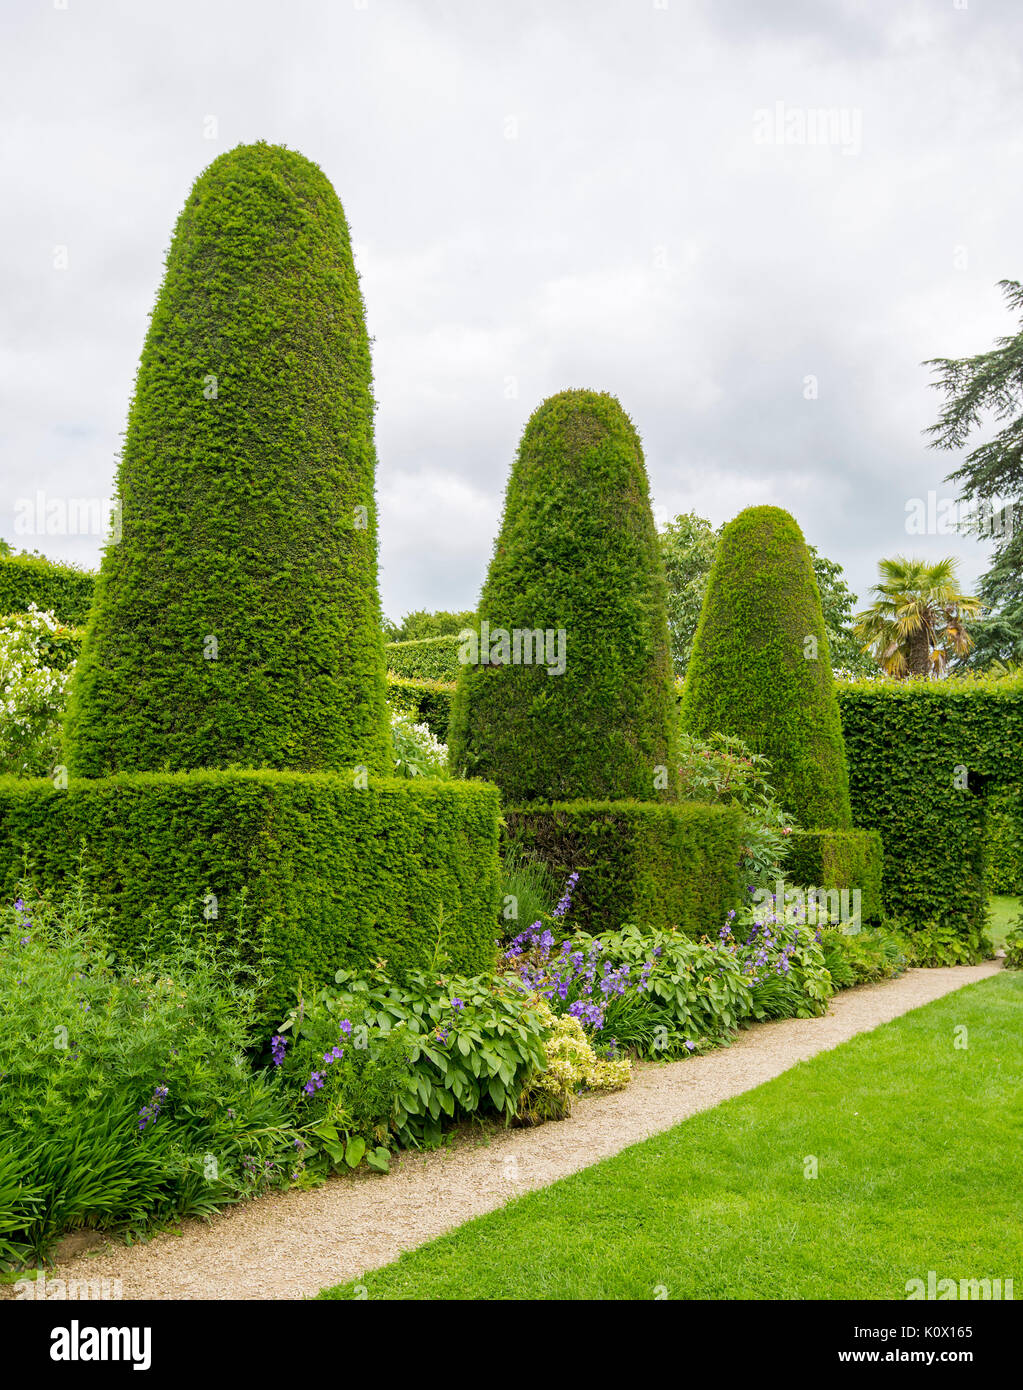 Englischer Garten, bei der die Zeile der Hohe kegelförmige Formgehölze Hecken der Eibe neben smaragdgrünen Rasen und gepflegte Wege Stockfoto